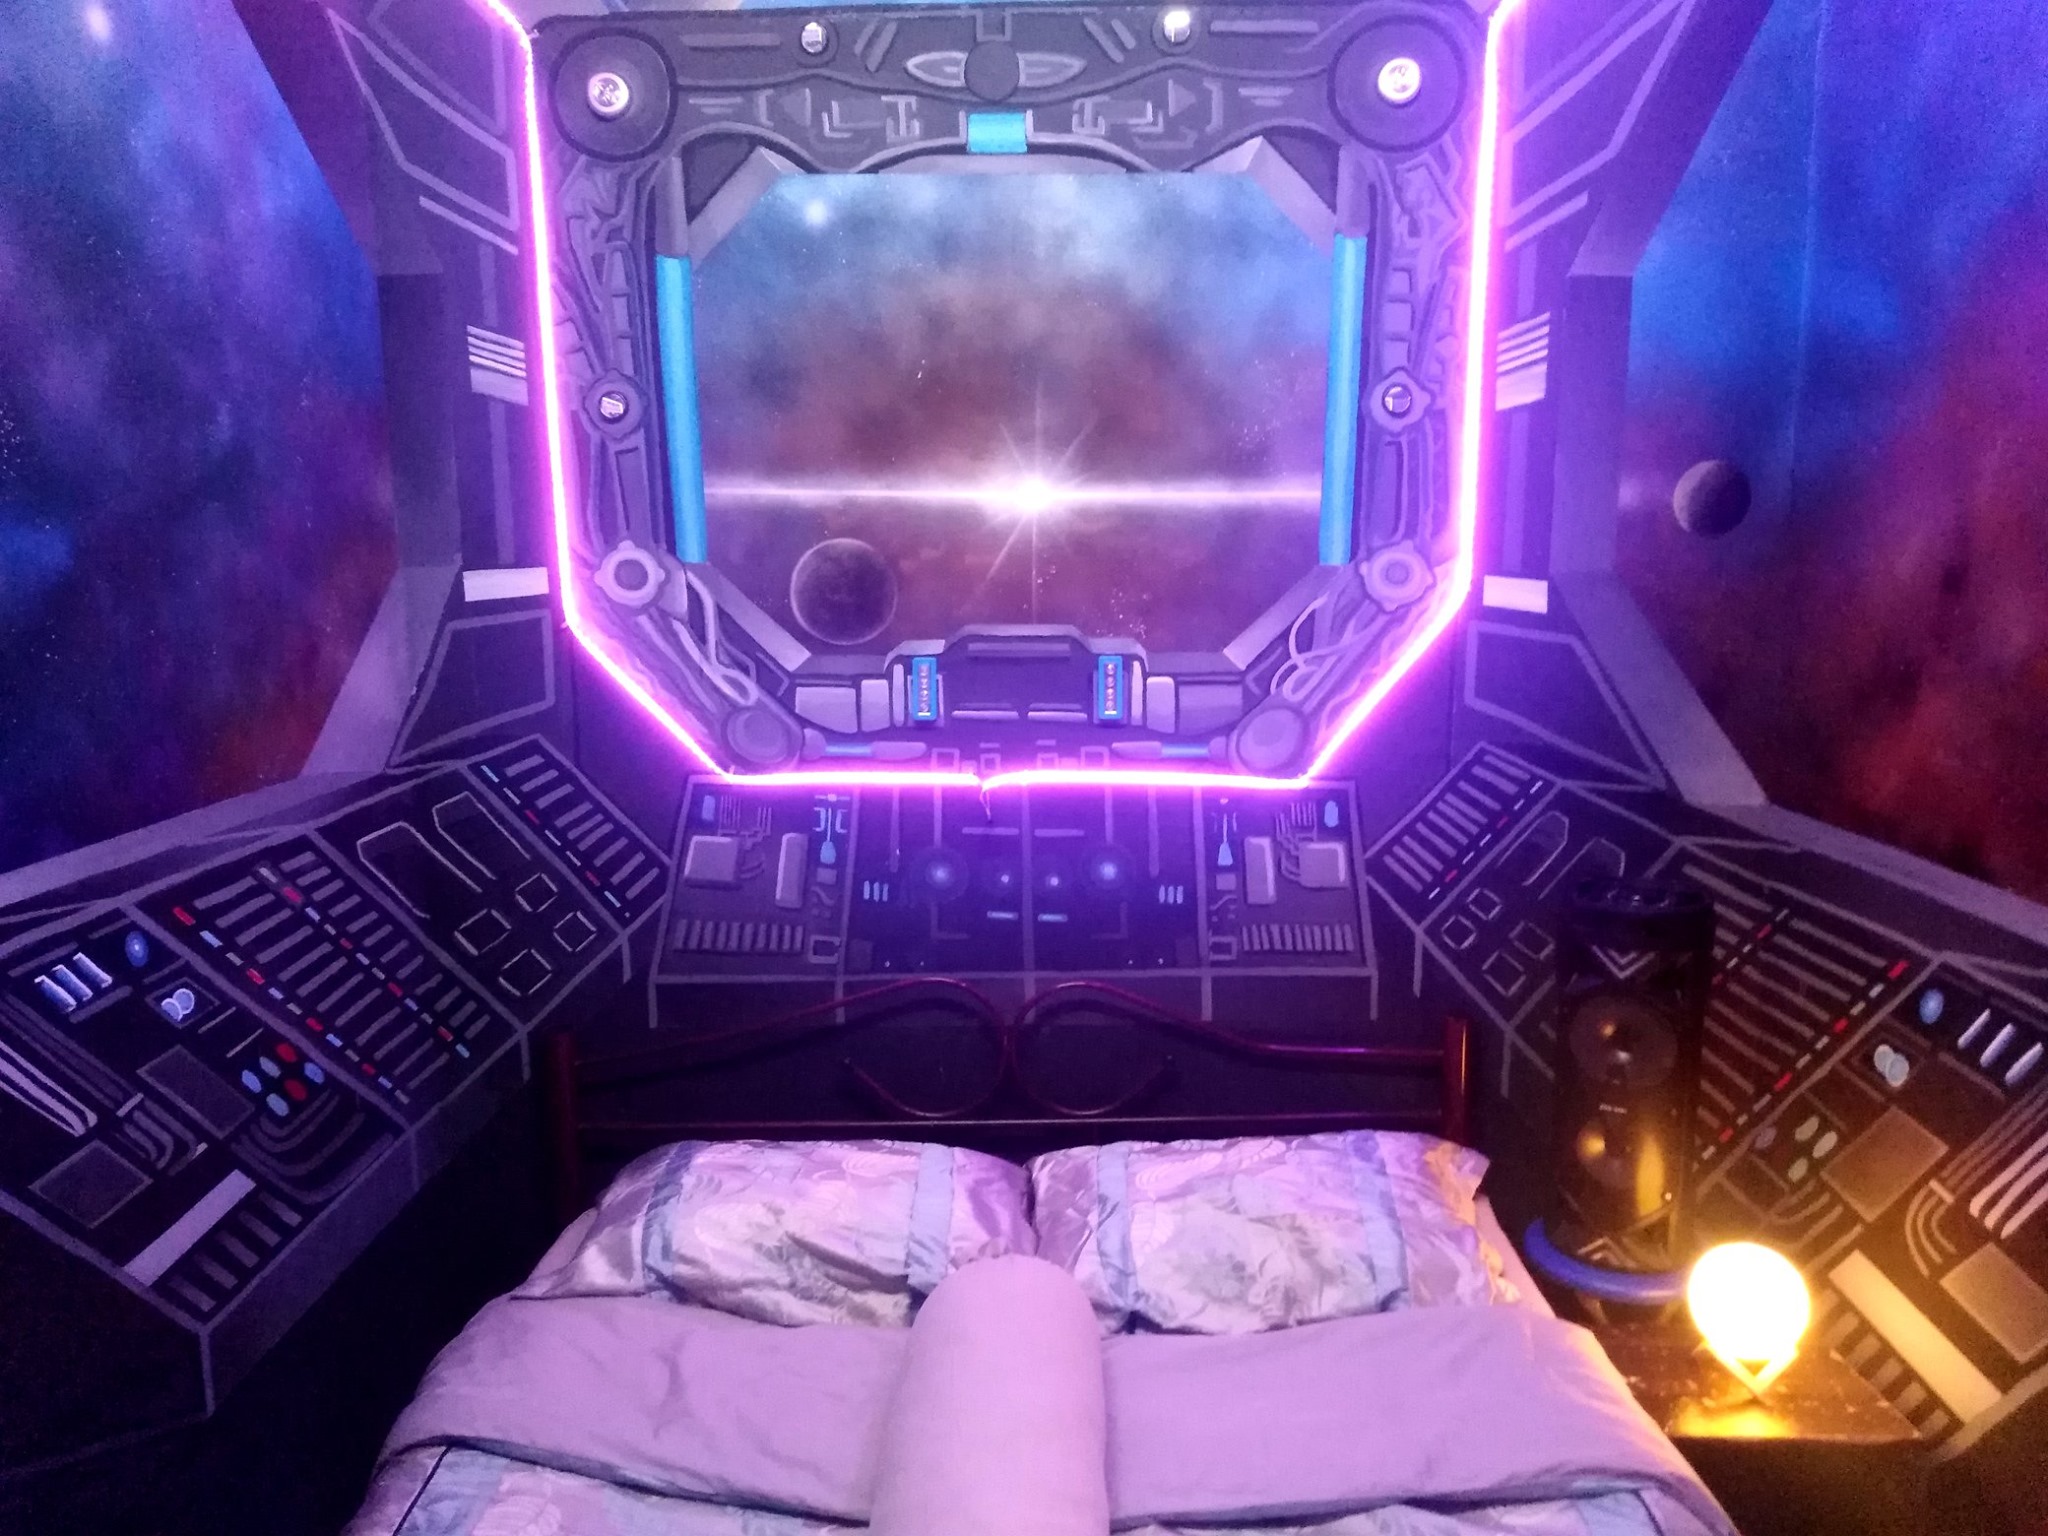 Spaceship bedroom